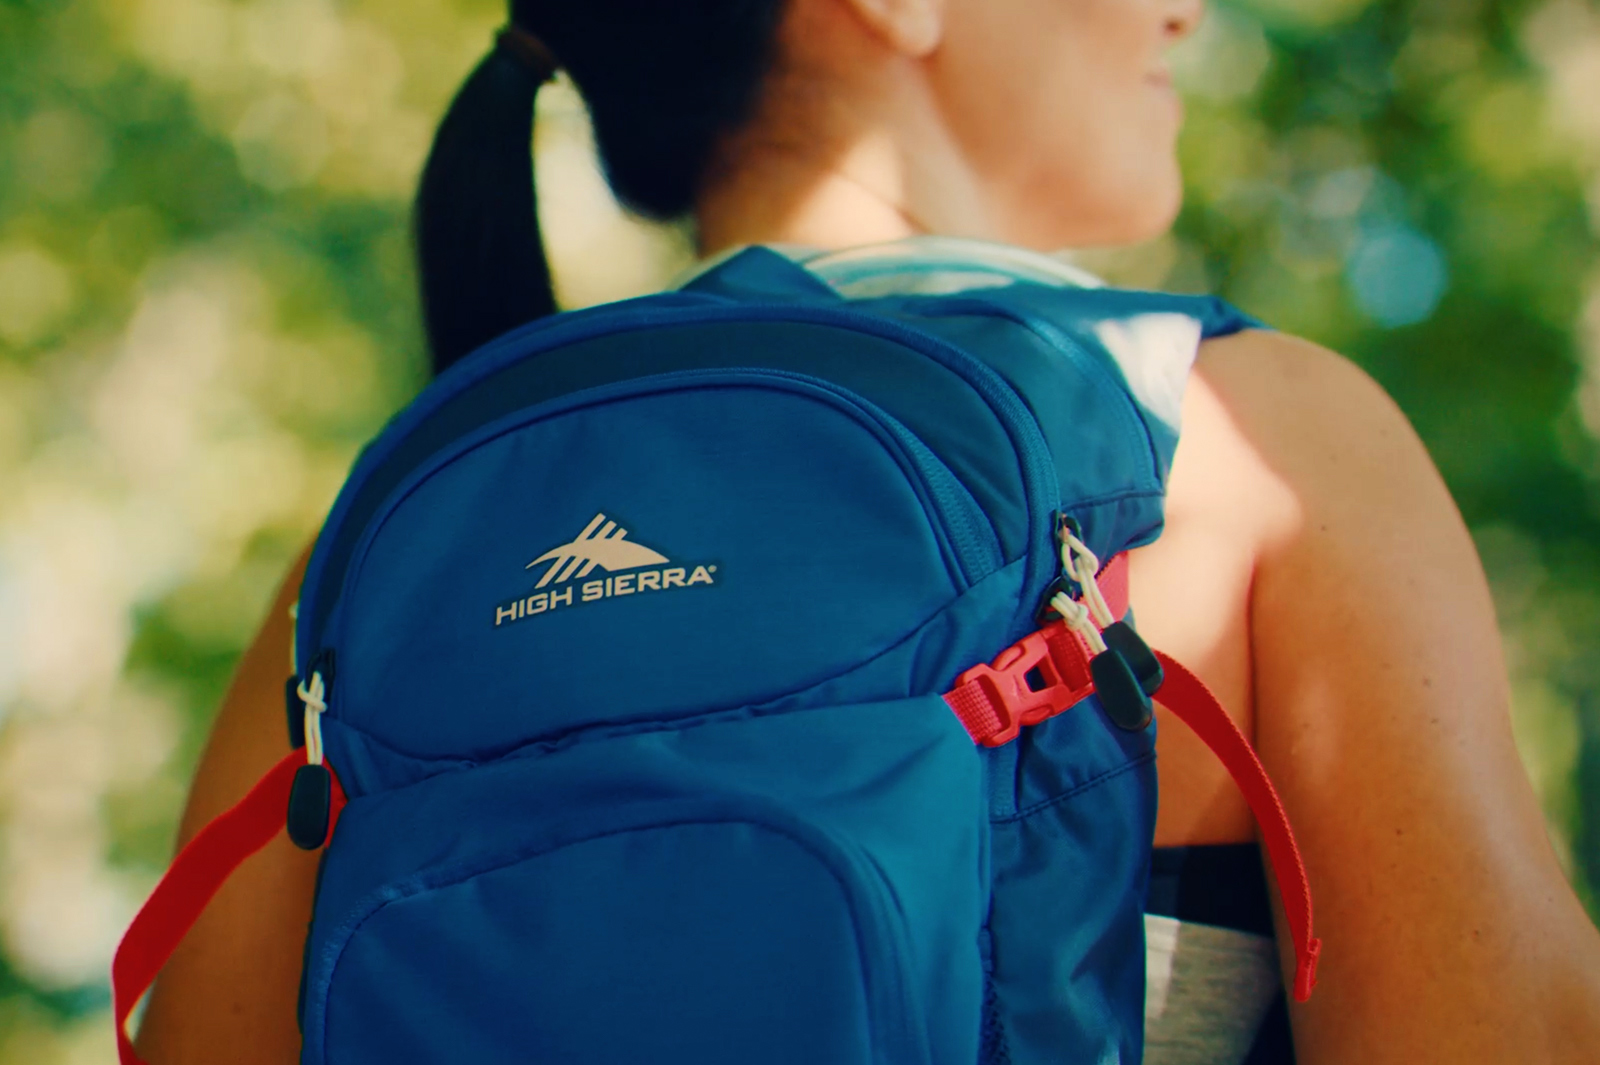 Backpacker sporting a High Sierra bag.